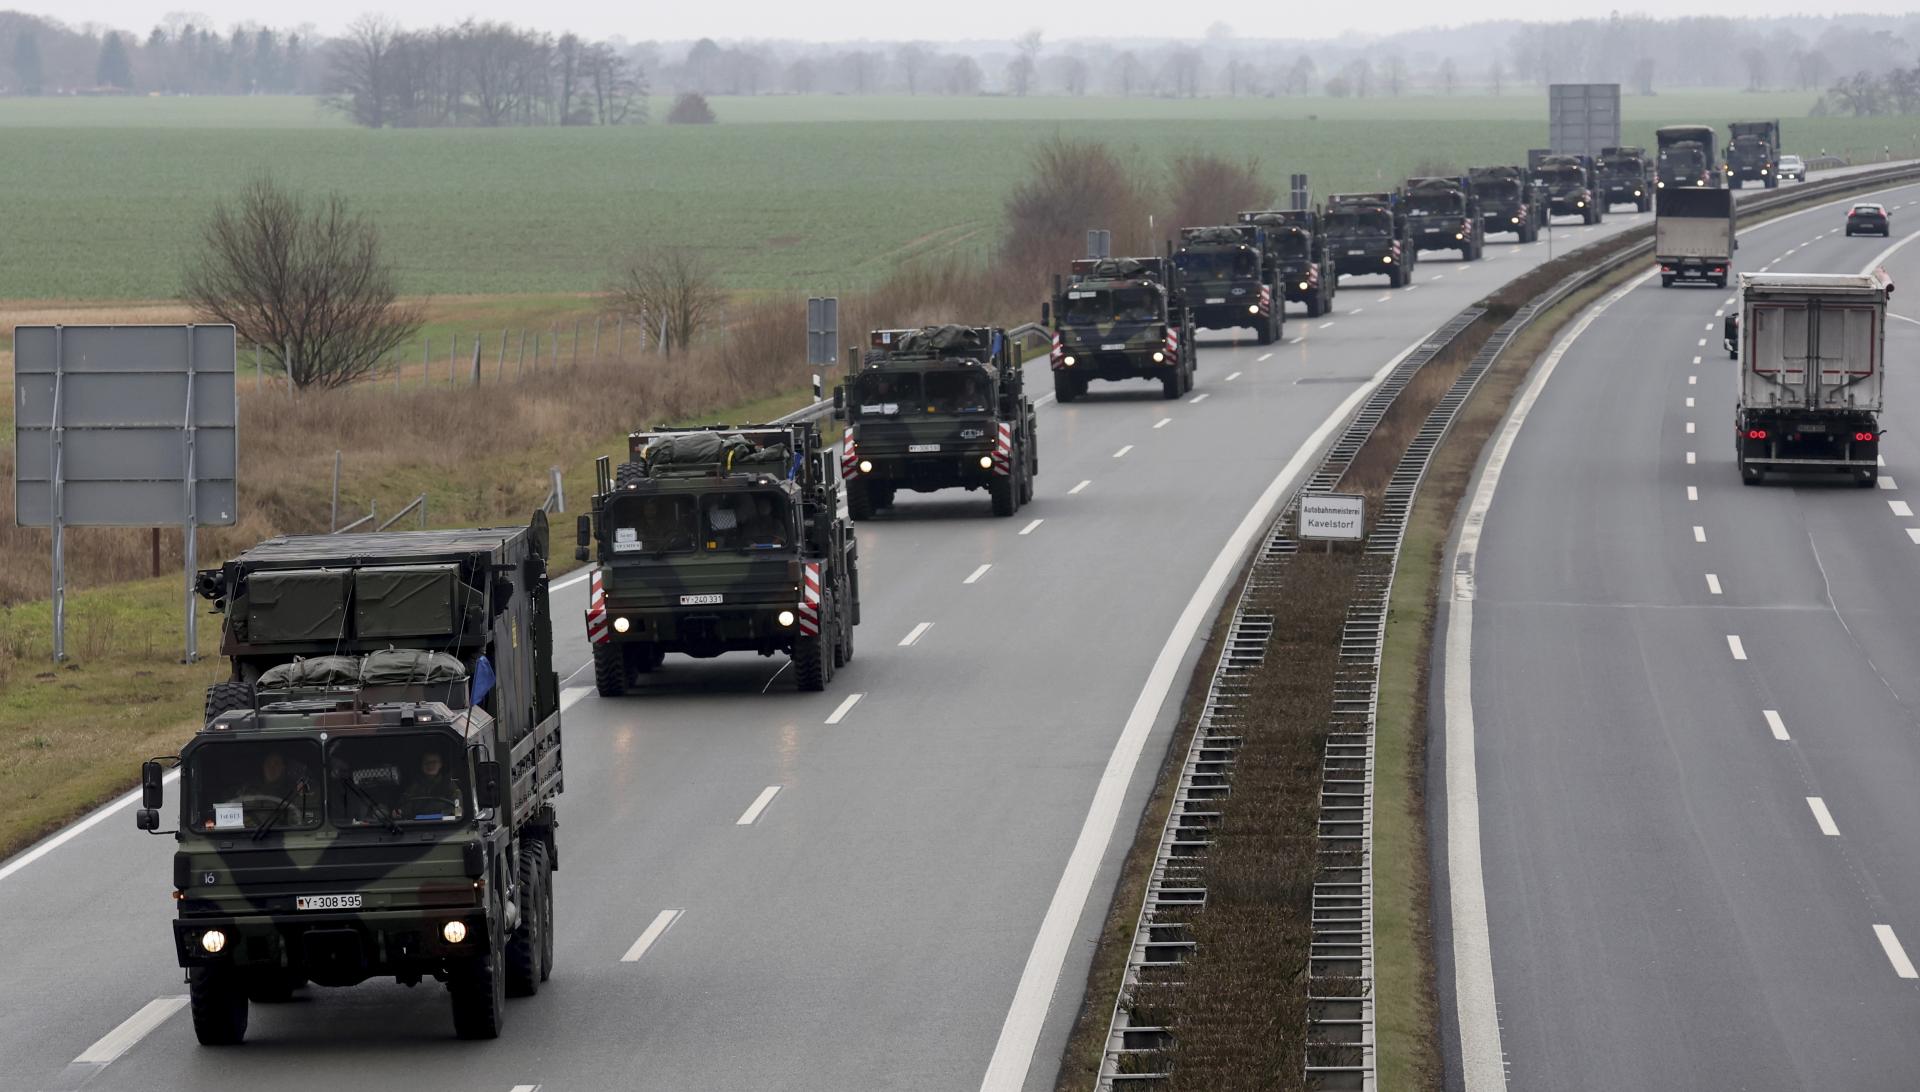 Rusko plánuje novú vlnu útokov do konca februára, tvrdí Ukrajina. Moskva pripravuje 